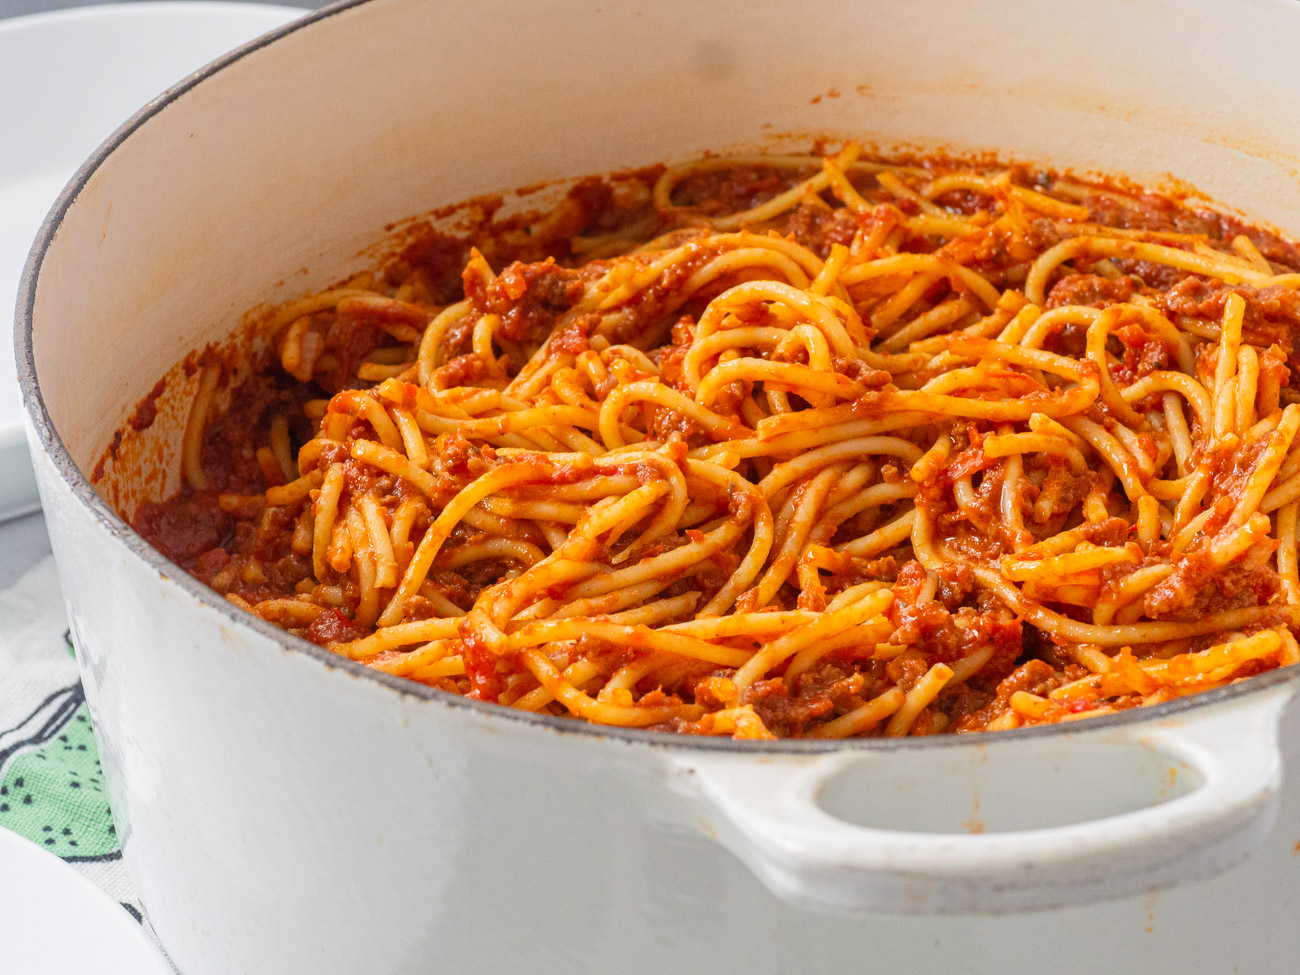 School Cafeteria Spaghetti